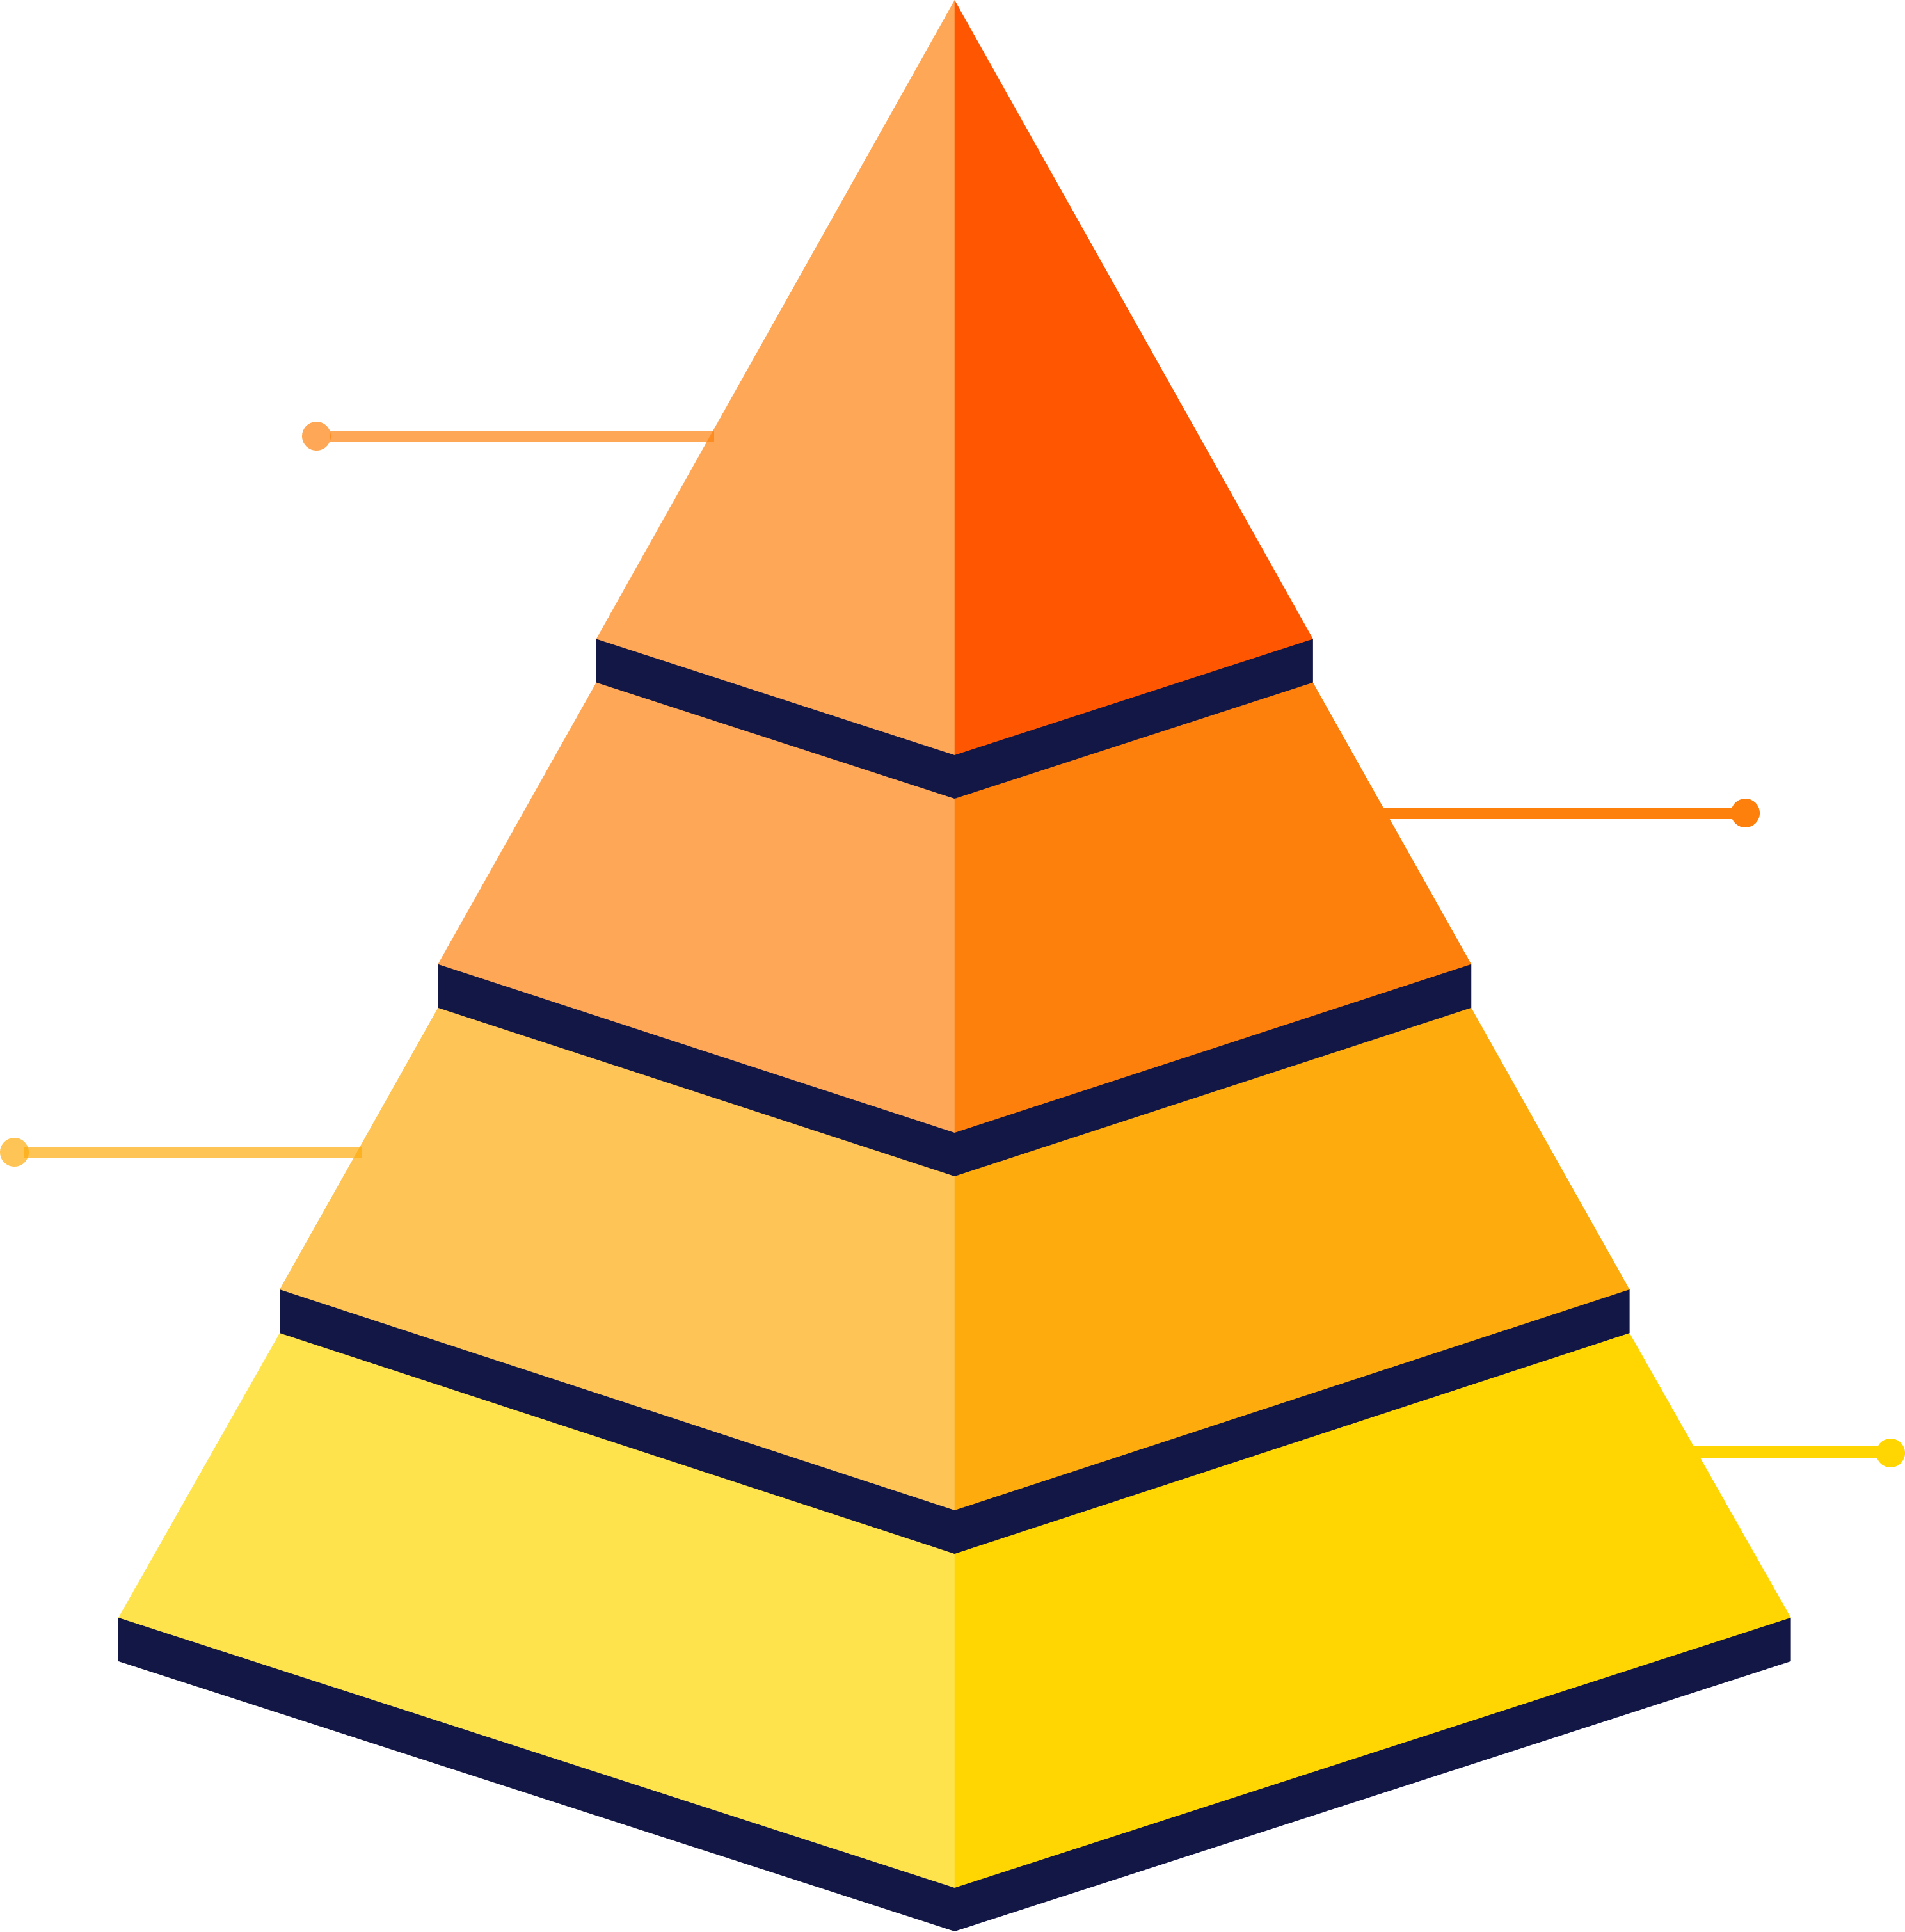 Pyramid-of-risks